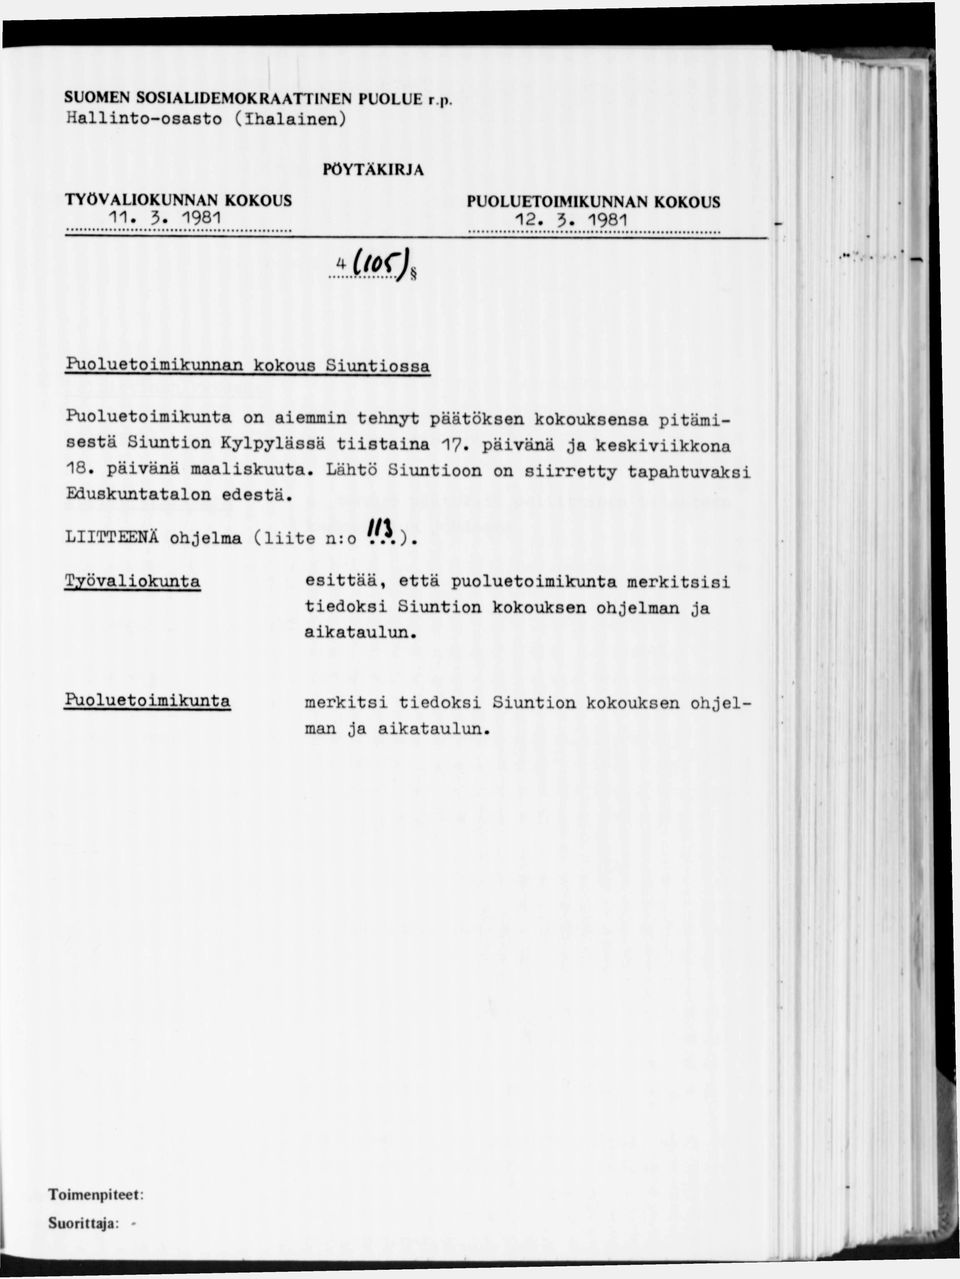 1981 Puoluetoimikunnan kokous Siuntiossa on aiemmin tehnyt päätöksen kokouksensa pitämisestä Siuntion Kylpylässä tiistaina 17.